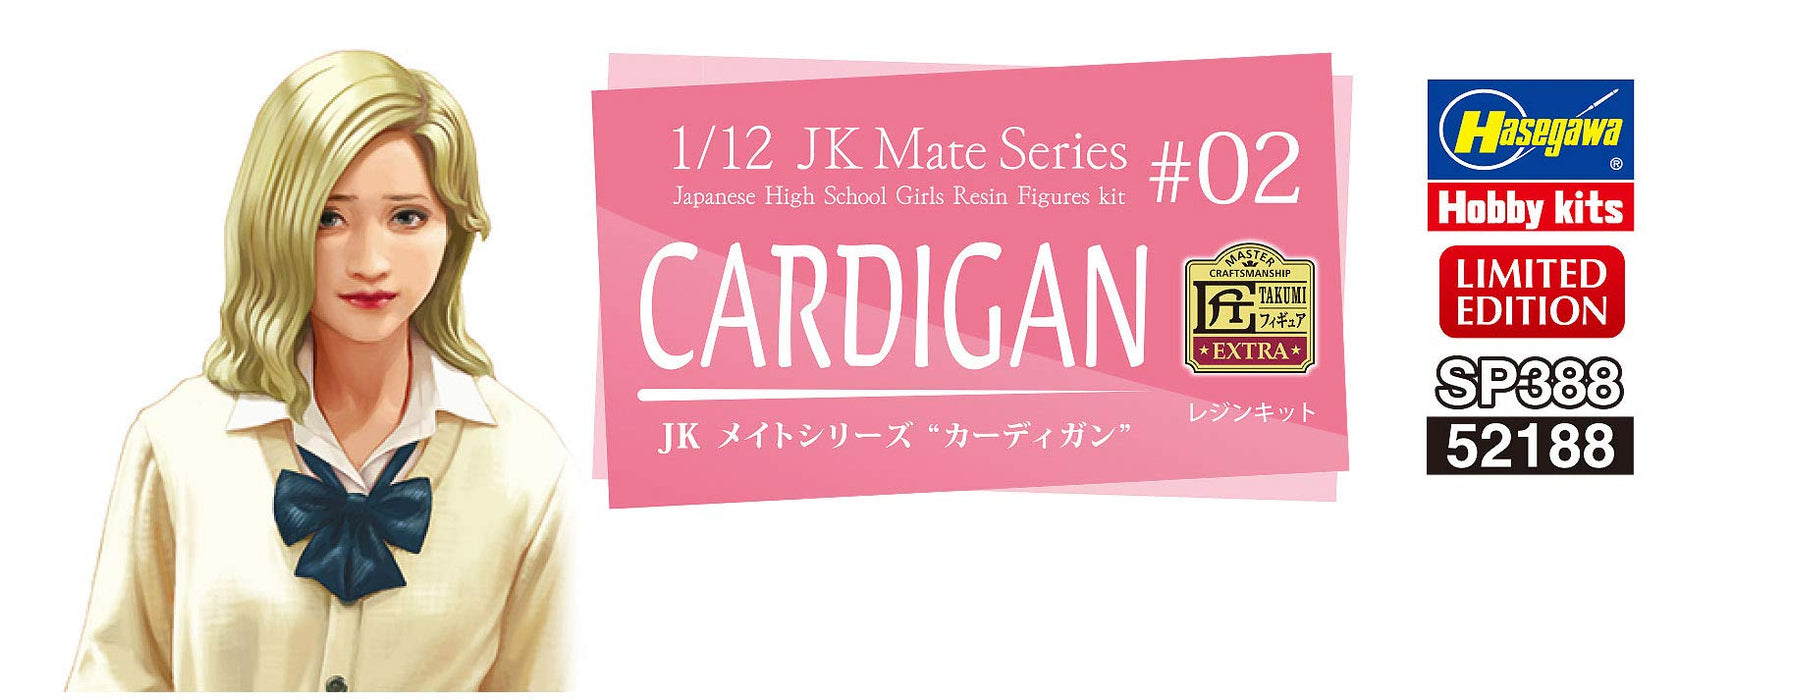 Hasegawa 1/12 Jk Mate Series Cardigan Resin Kit Sp388 for Model Building